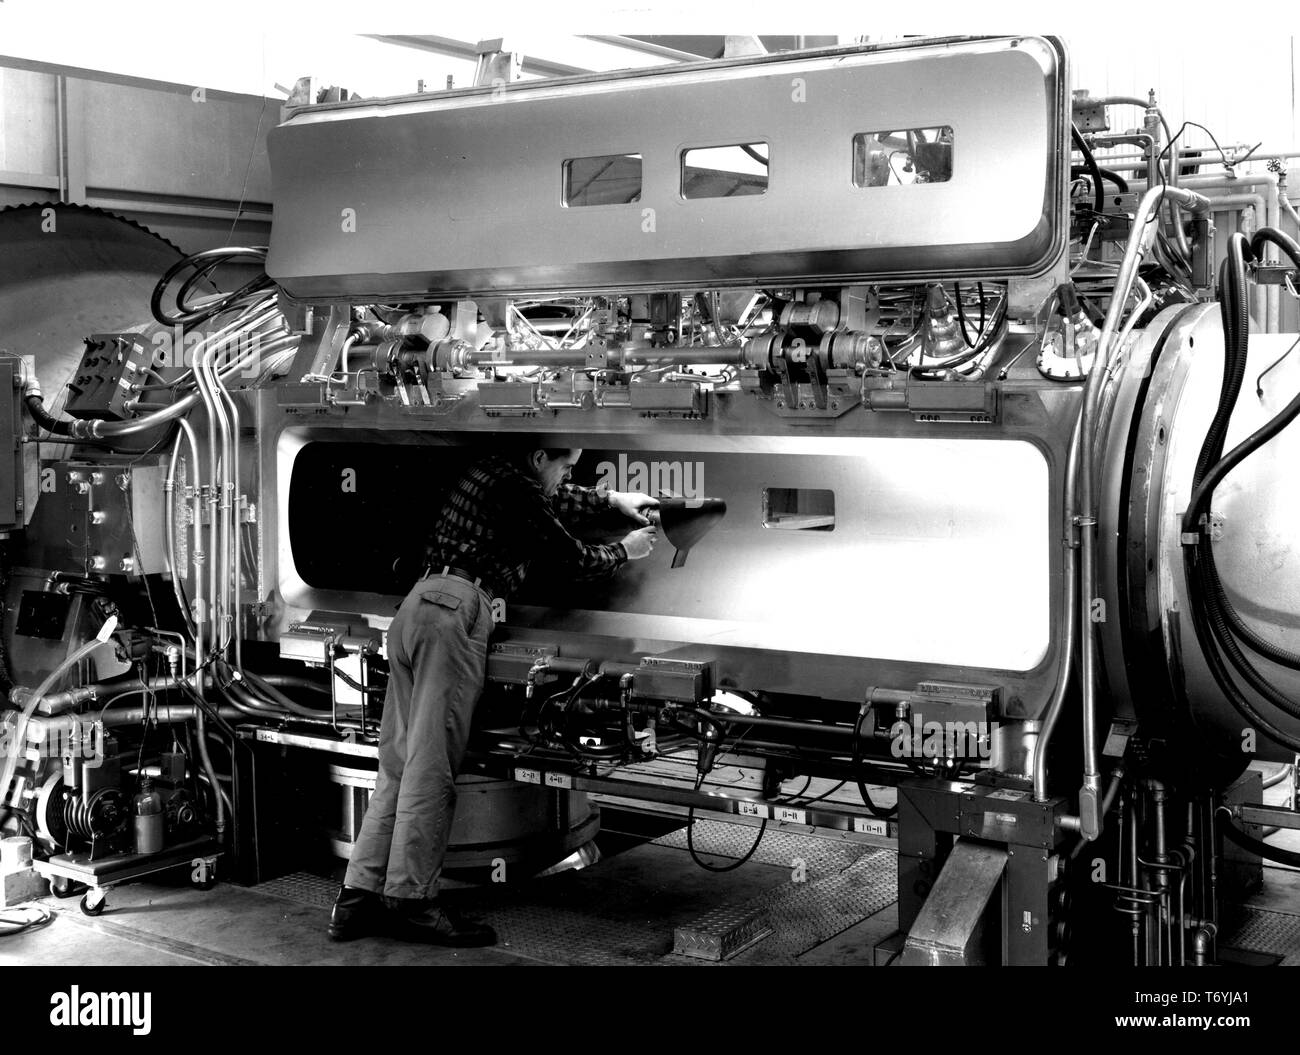 Photographie de l'ingénieur de la NASA de fixation du corps de levage M-1 dans la gorge de la tunnel hypersonique au NASA Ames Research Center, Mountain View, Californie, 1964. Droit avec la permission de la National Aeronautics and Space Administration (NASA). () Banque D'Images